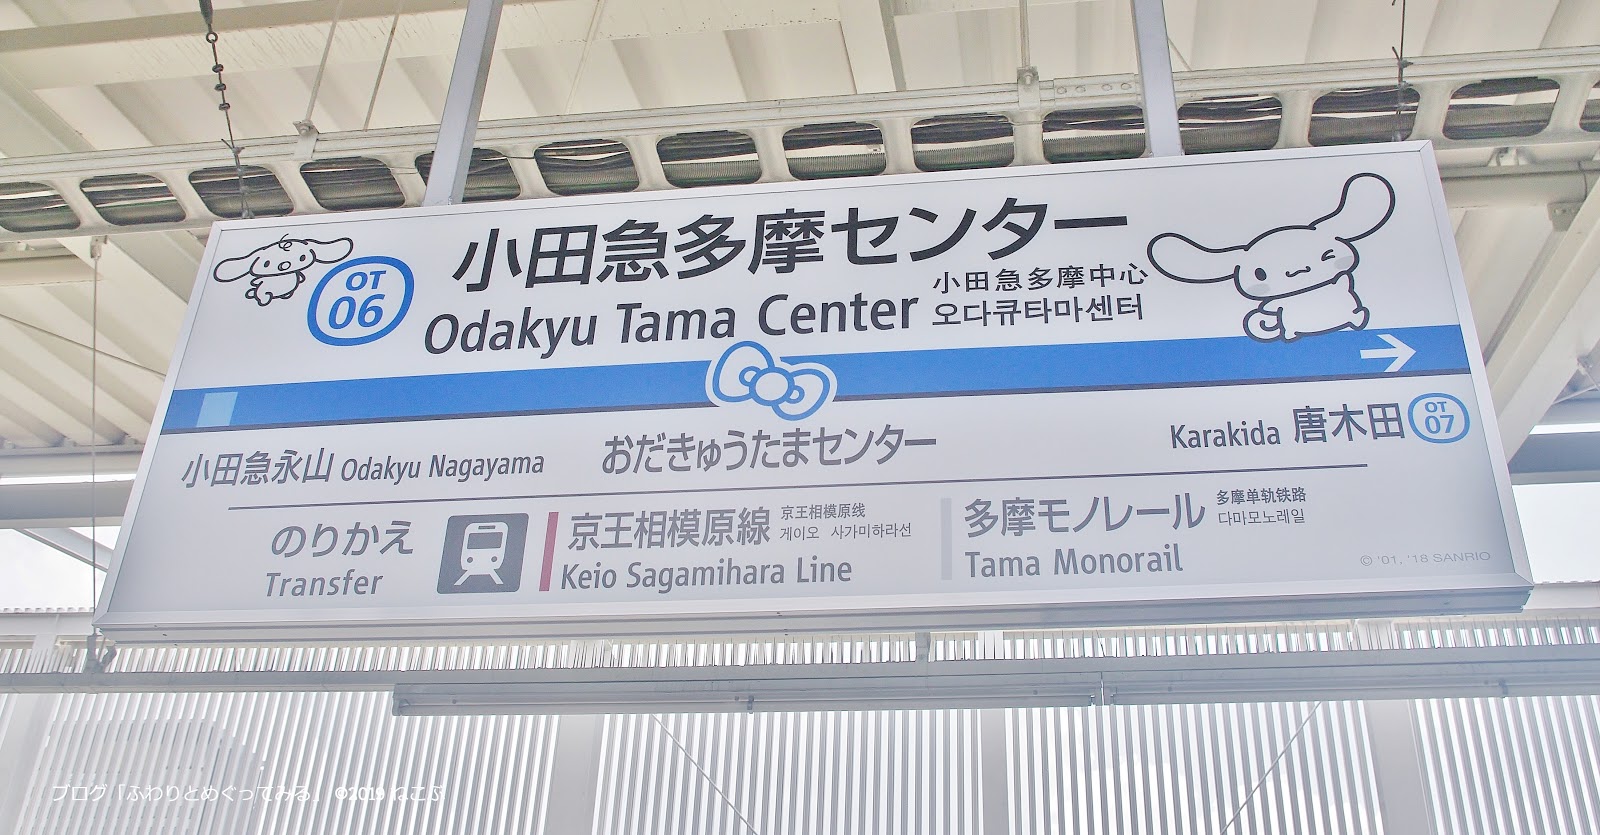 ふわりとめぐってみる 小田急多摩センター駅のサンリオキャラクターのデコレーション さわやかにブルーとホワイト